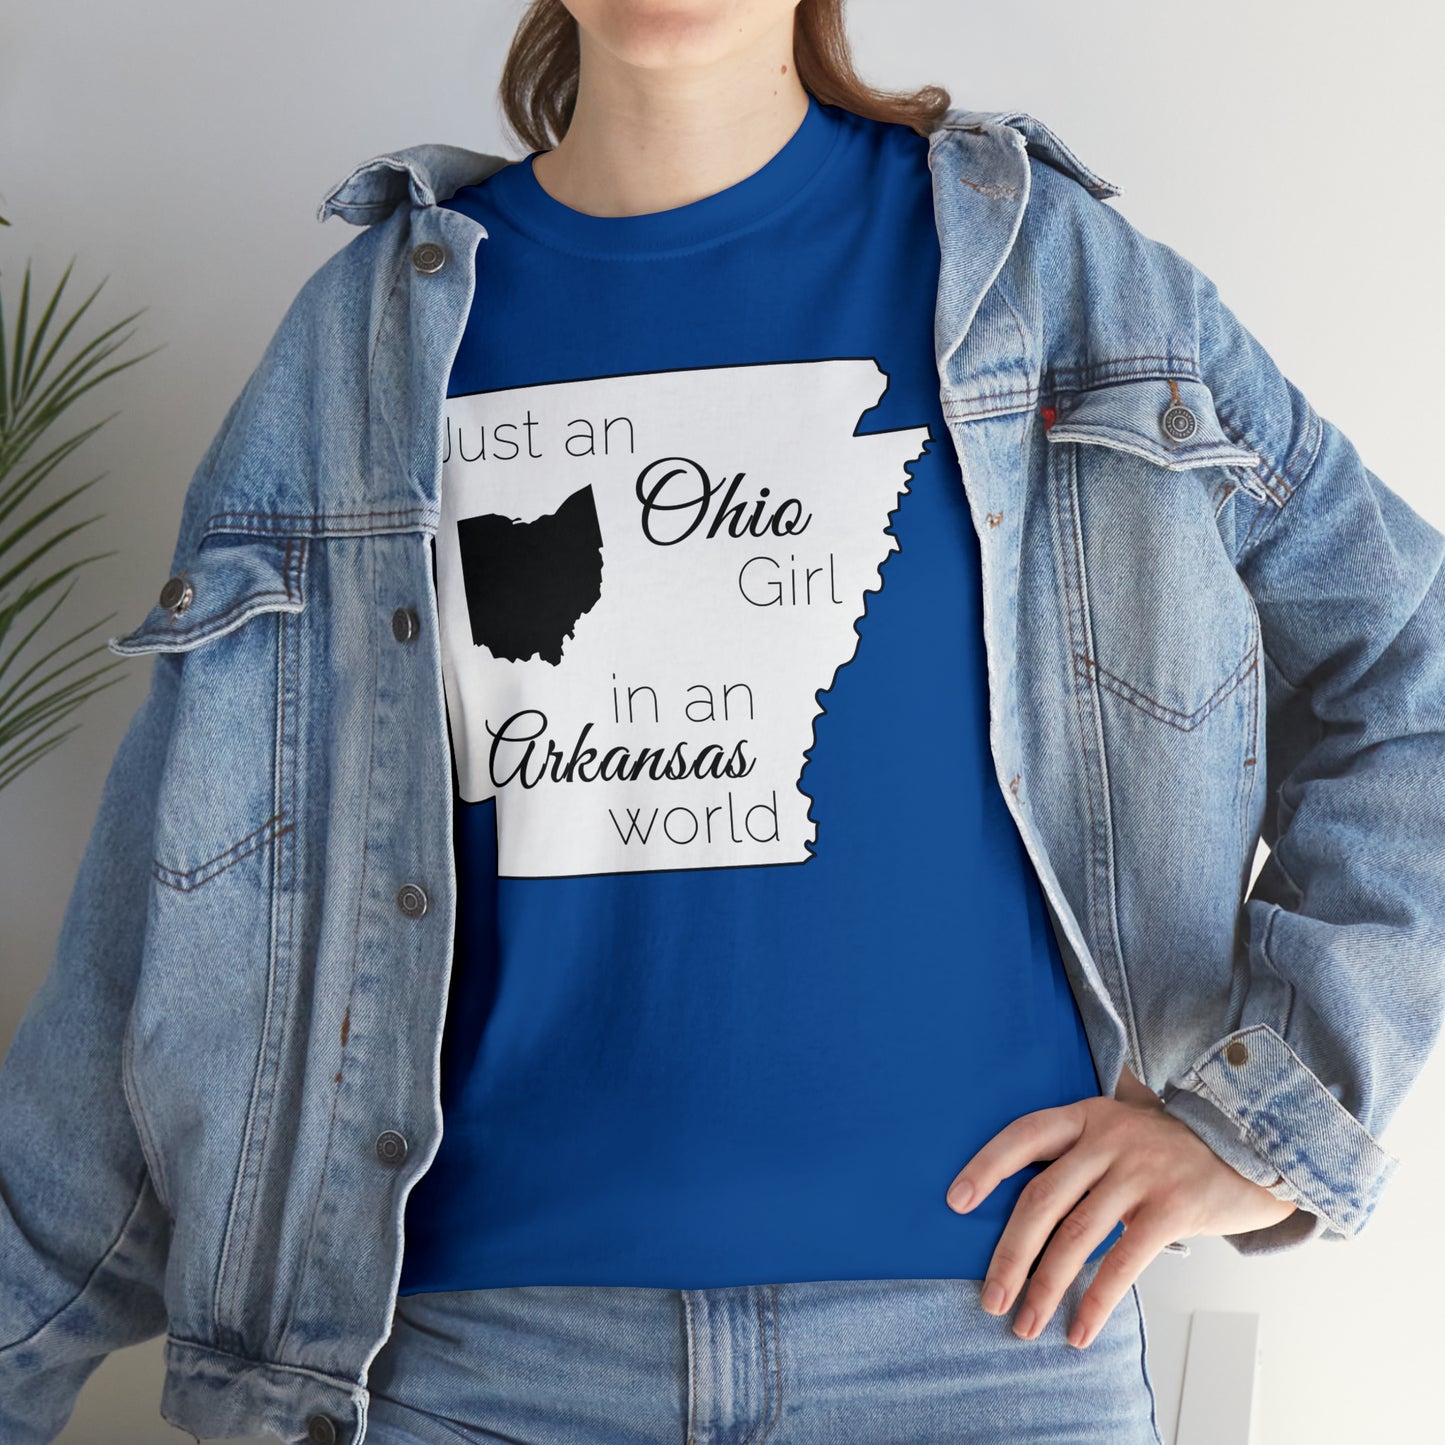 Just an Ohio Girl in an Arkansas World Unisex Heavy Cotton Tee